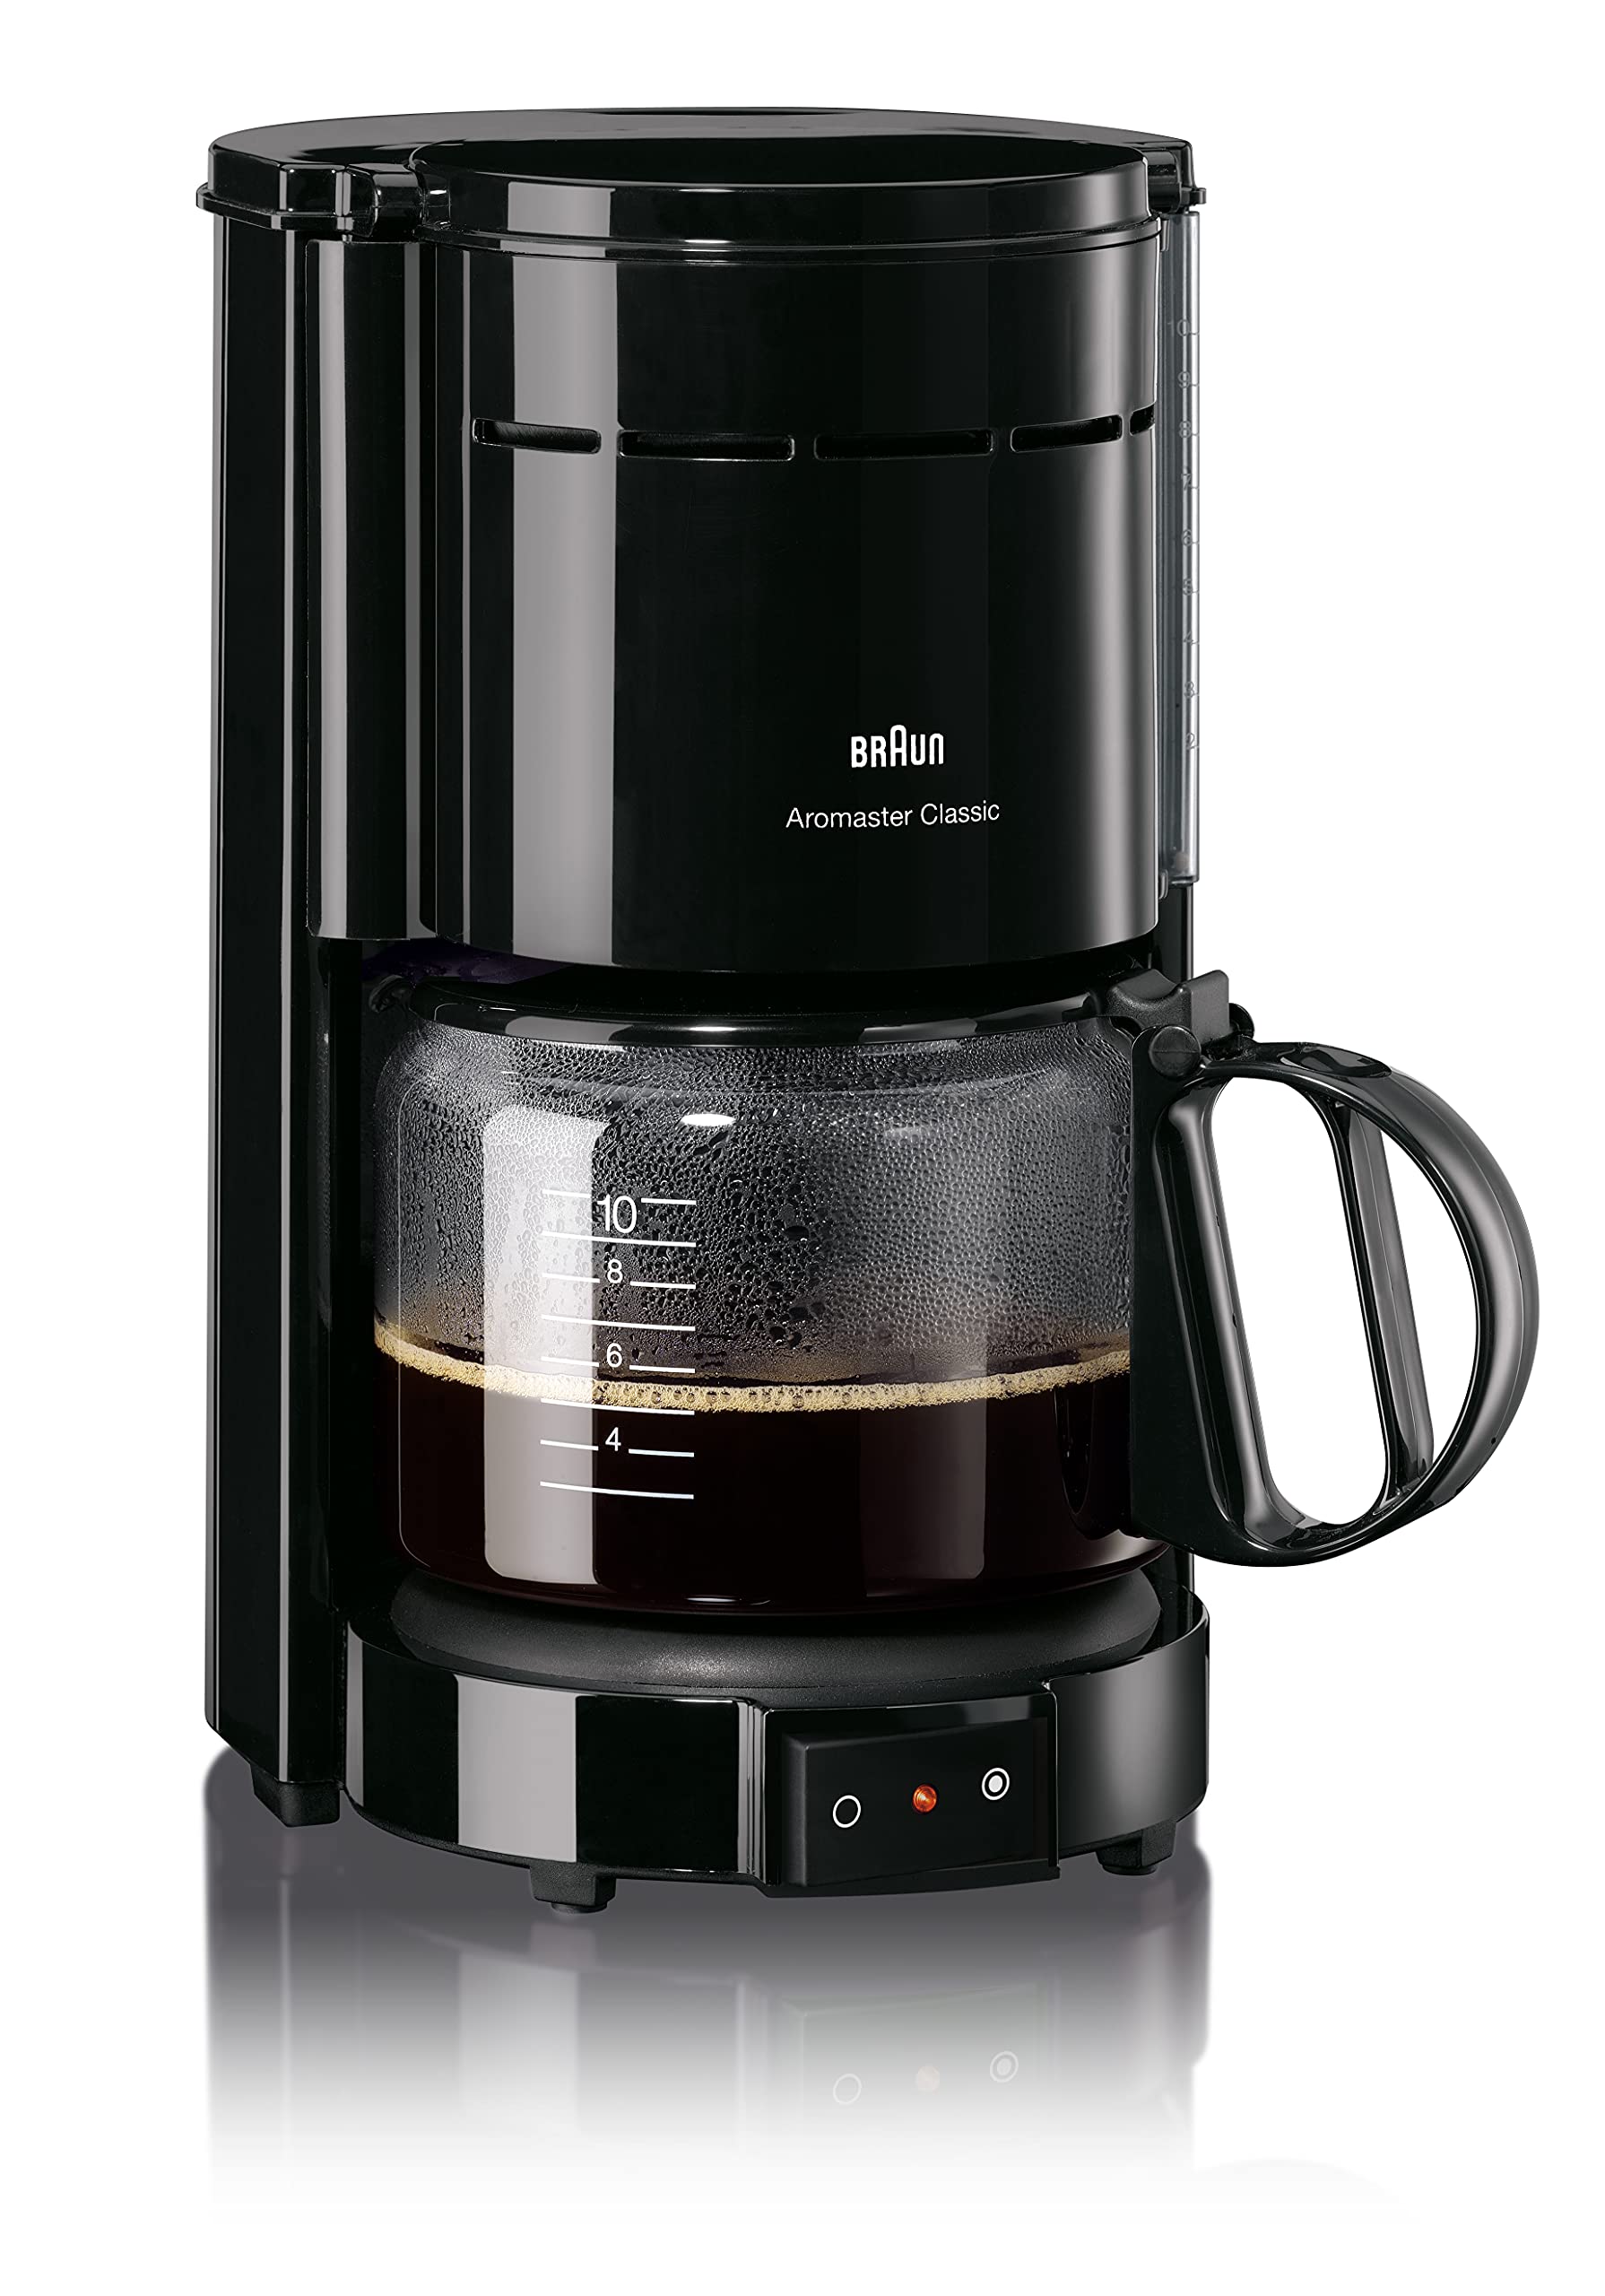 Braun Household Kaffeemaschine KF 47 BK-Filterkaffeemaschine mit Glaskanne für klassischen Filterkaffee,Aromatischer Kaffee dank OptiBrew-System,Tropfstopp,Abschaltautomatik,220-230V || 50-60Hz